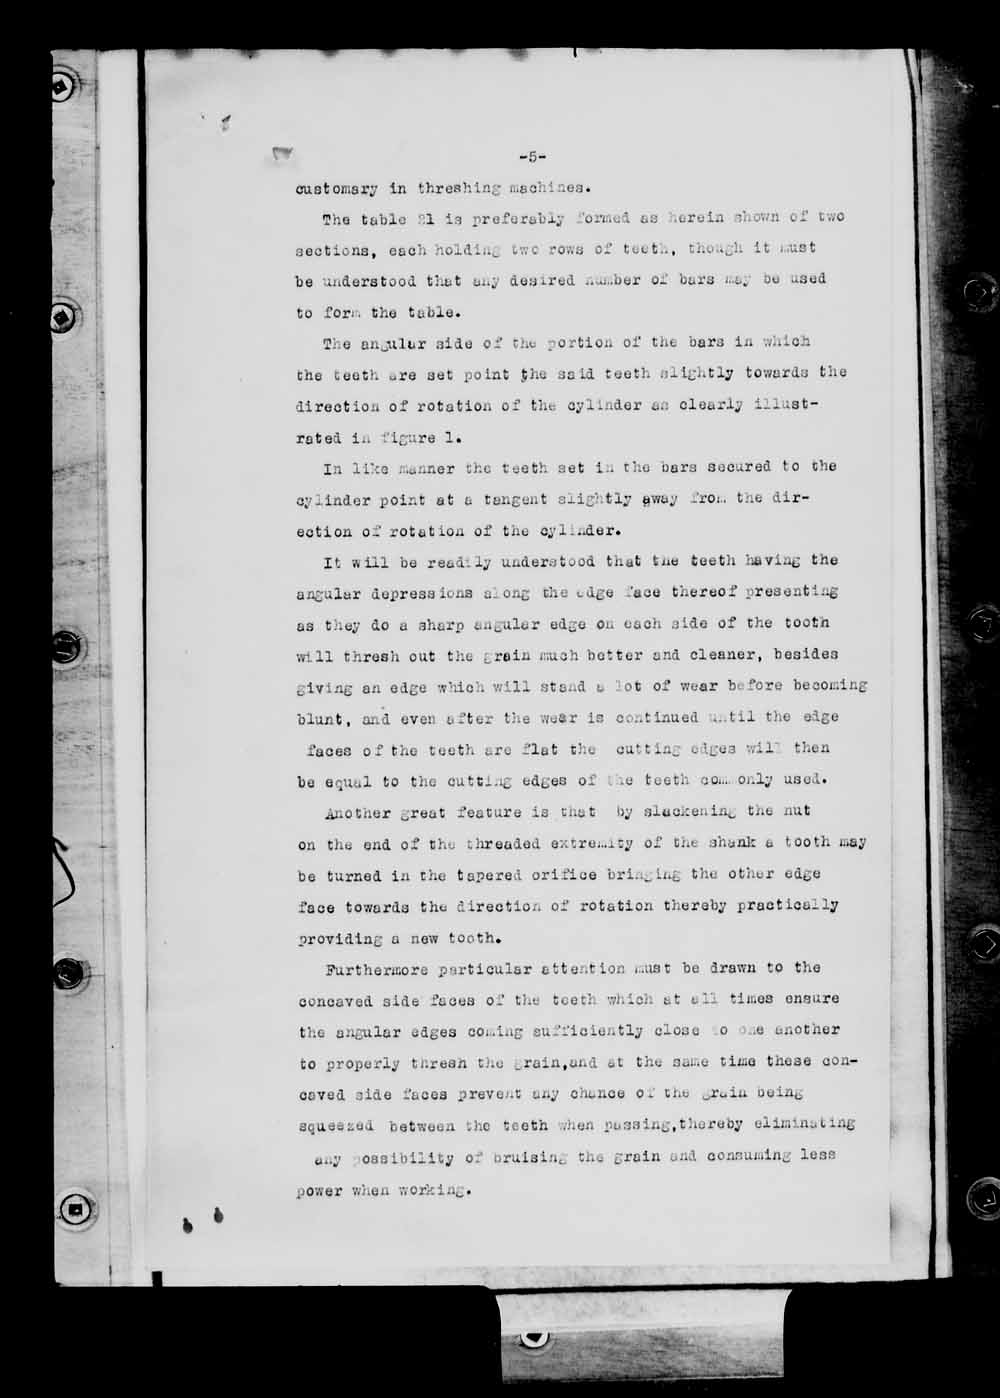 Page numérisé de Brevets canadiens, 1869-1919 pour l'image numéro: e004961080